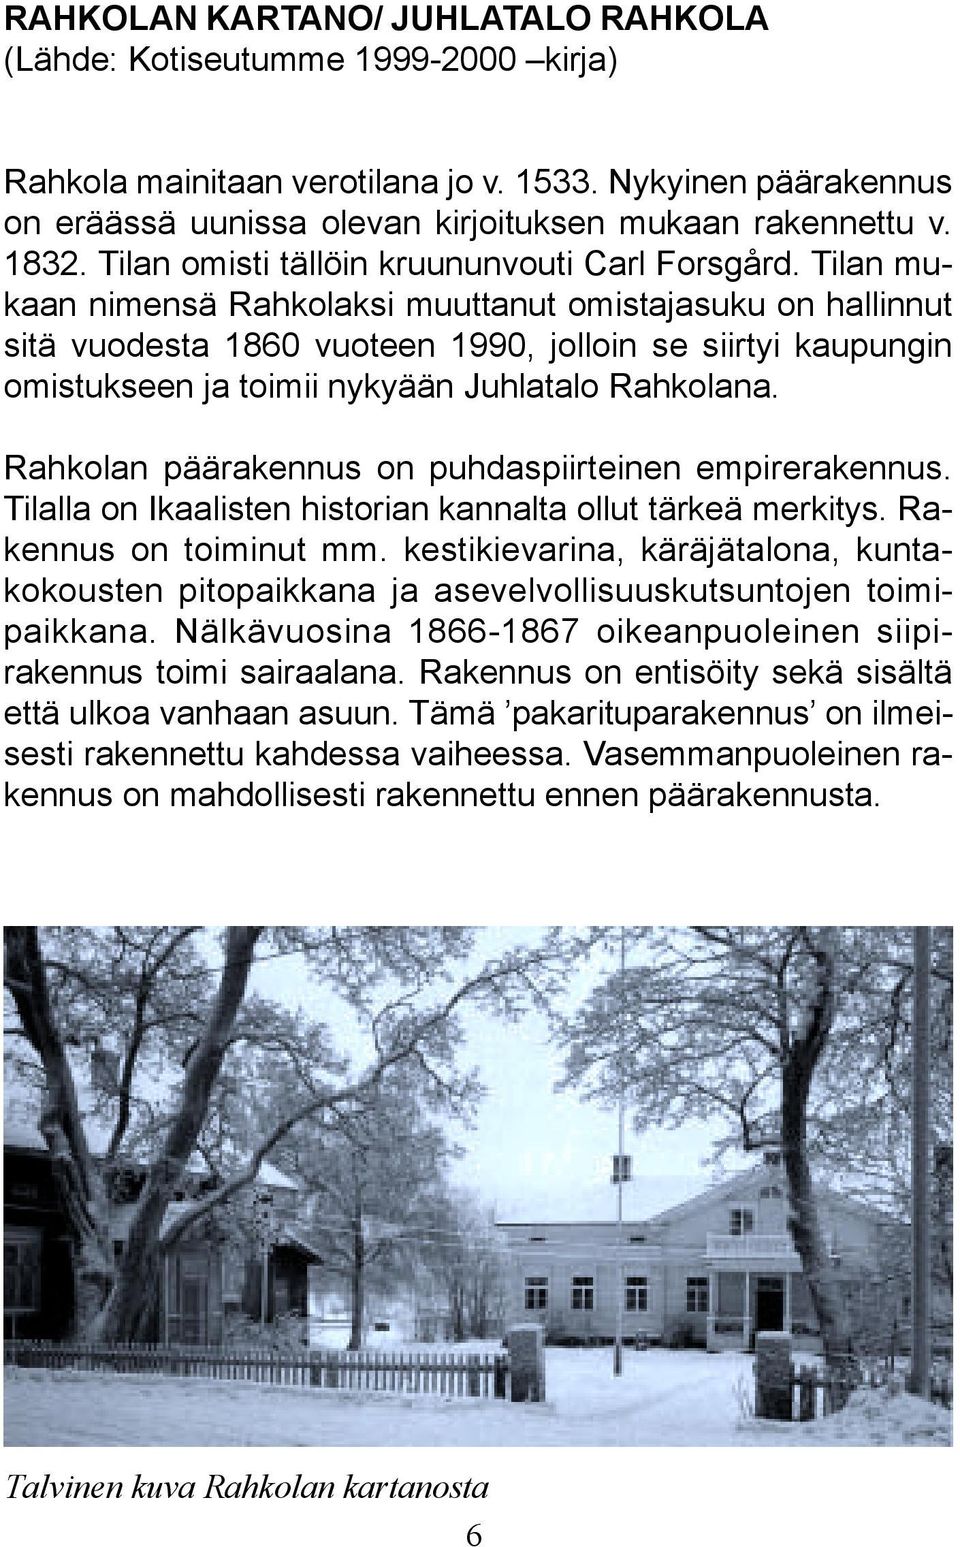 Tilan mukaan nimensä Rahkolaksi muuttanut omistajasuku on hallinnut sitä vuodesta 1860 vuoteen 1990, jolloin se siirtyi kaupungin omistukseen ja toimii nykyään Juhlatalo Rahkolana.